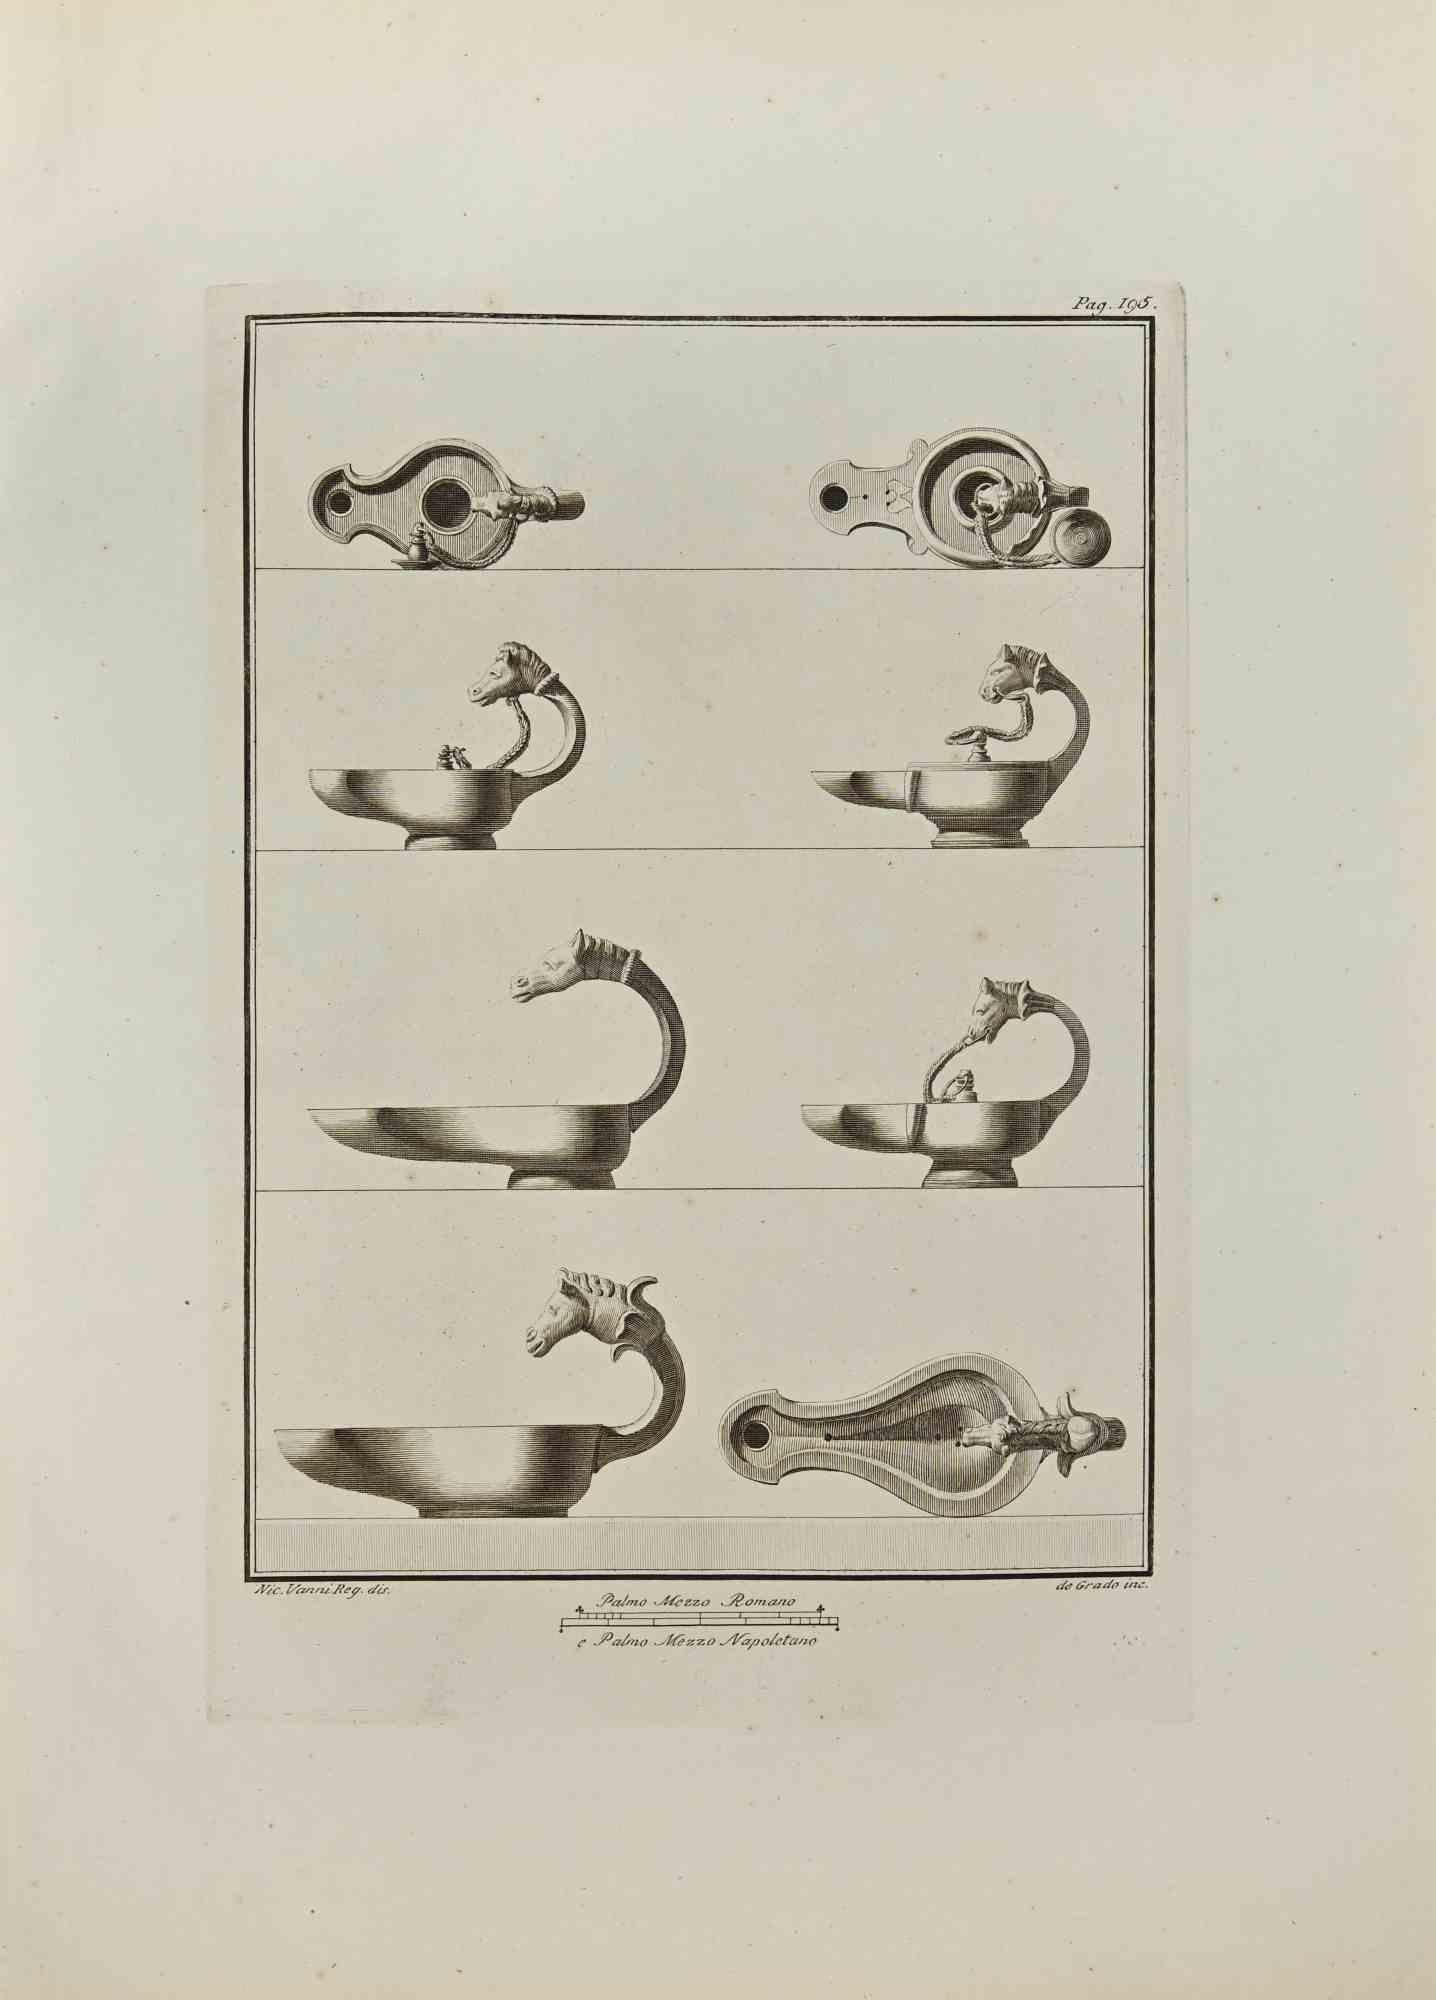 Öllampe mit Tierköpfen aus den "Altertümern von Herculaneum" ist eine Radierung auf Papier von Filippo De Grado aus dem 18. Jahrhundert.

Signiert auf der Platte.

Gute Bedingungen.

Die Radierung gehört zu der Druckserie "Antiquities of Herculaneum